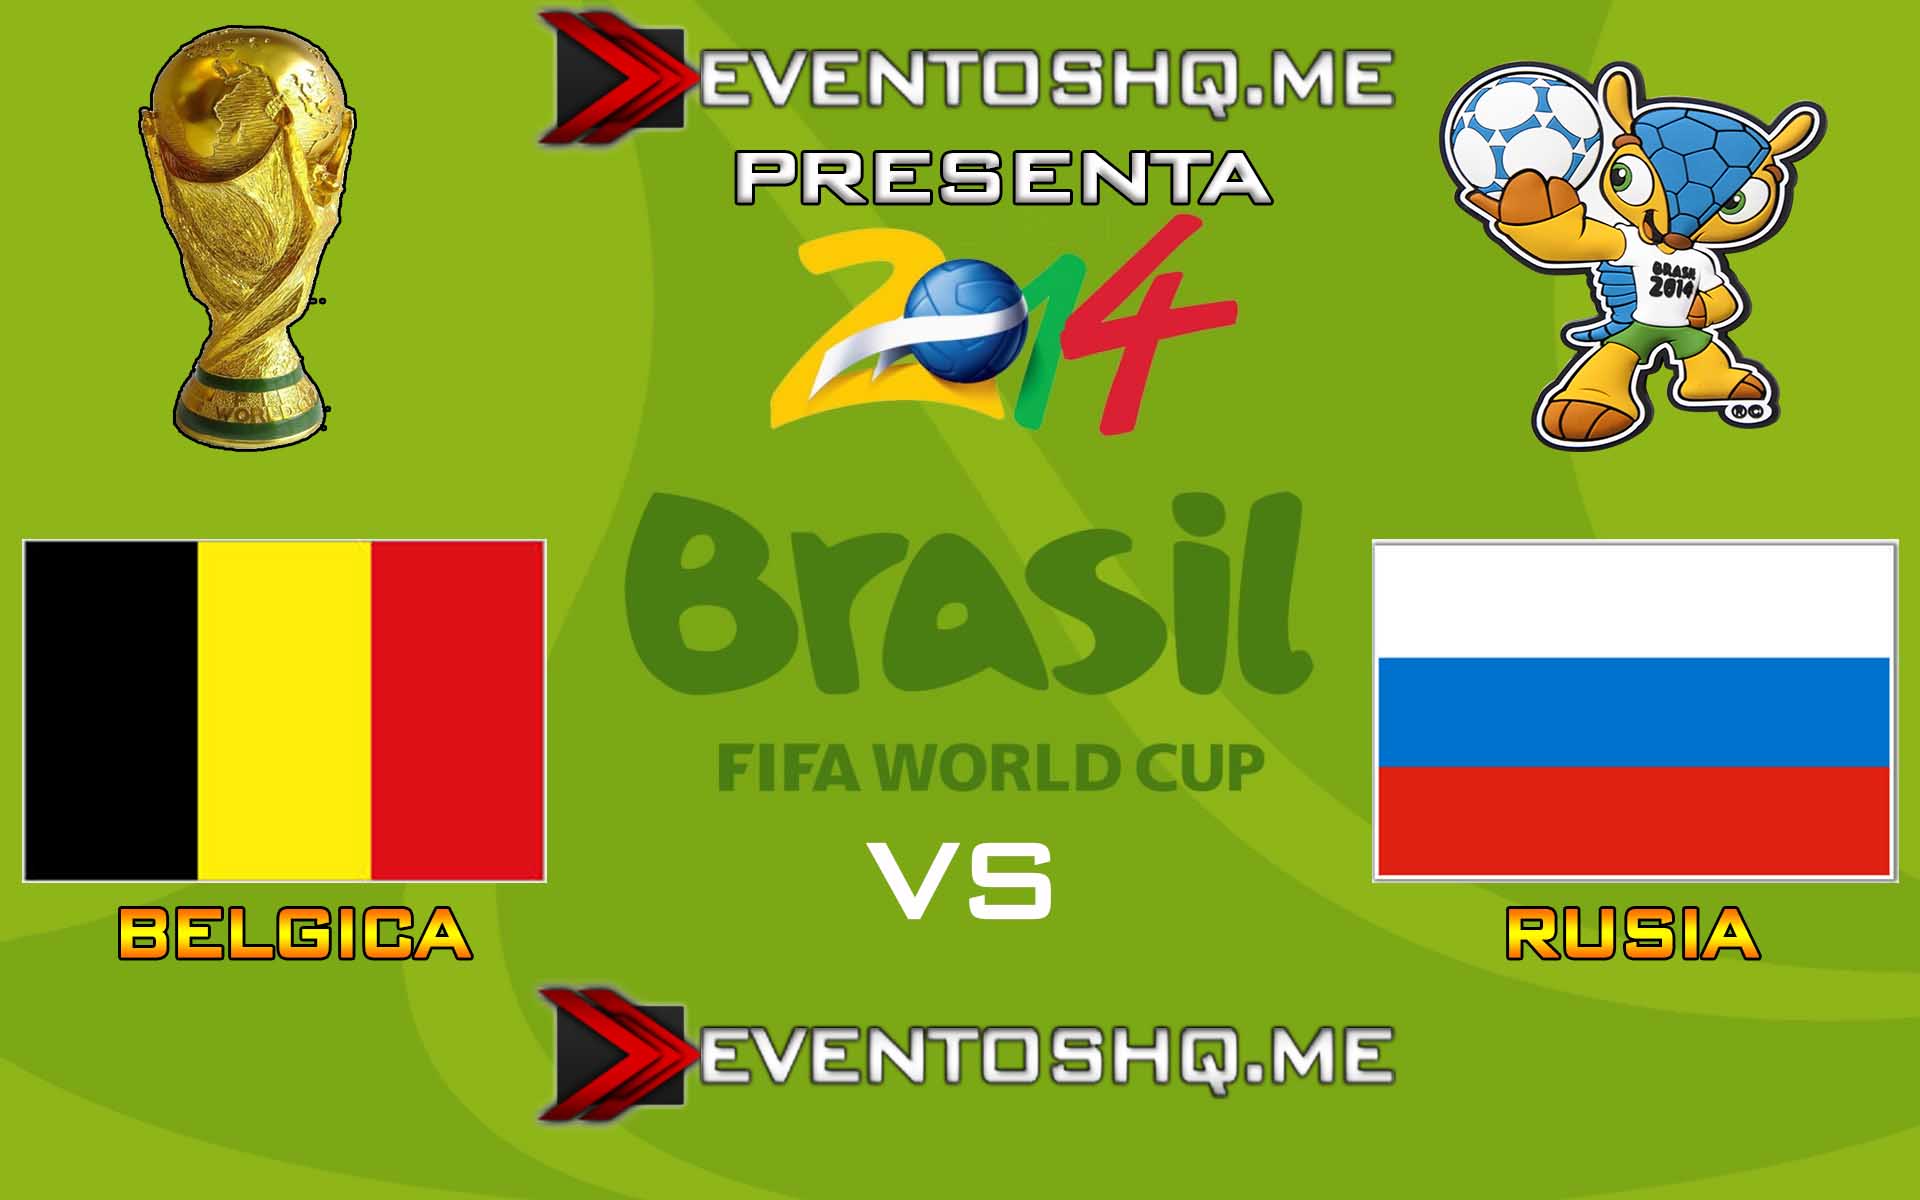 Ver en Vivo Belgica vs Rusia Mundial Brasil 2014 www.eventoshq.me